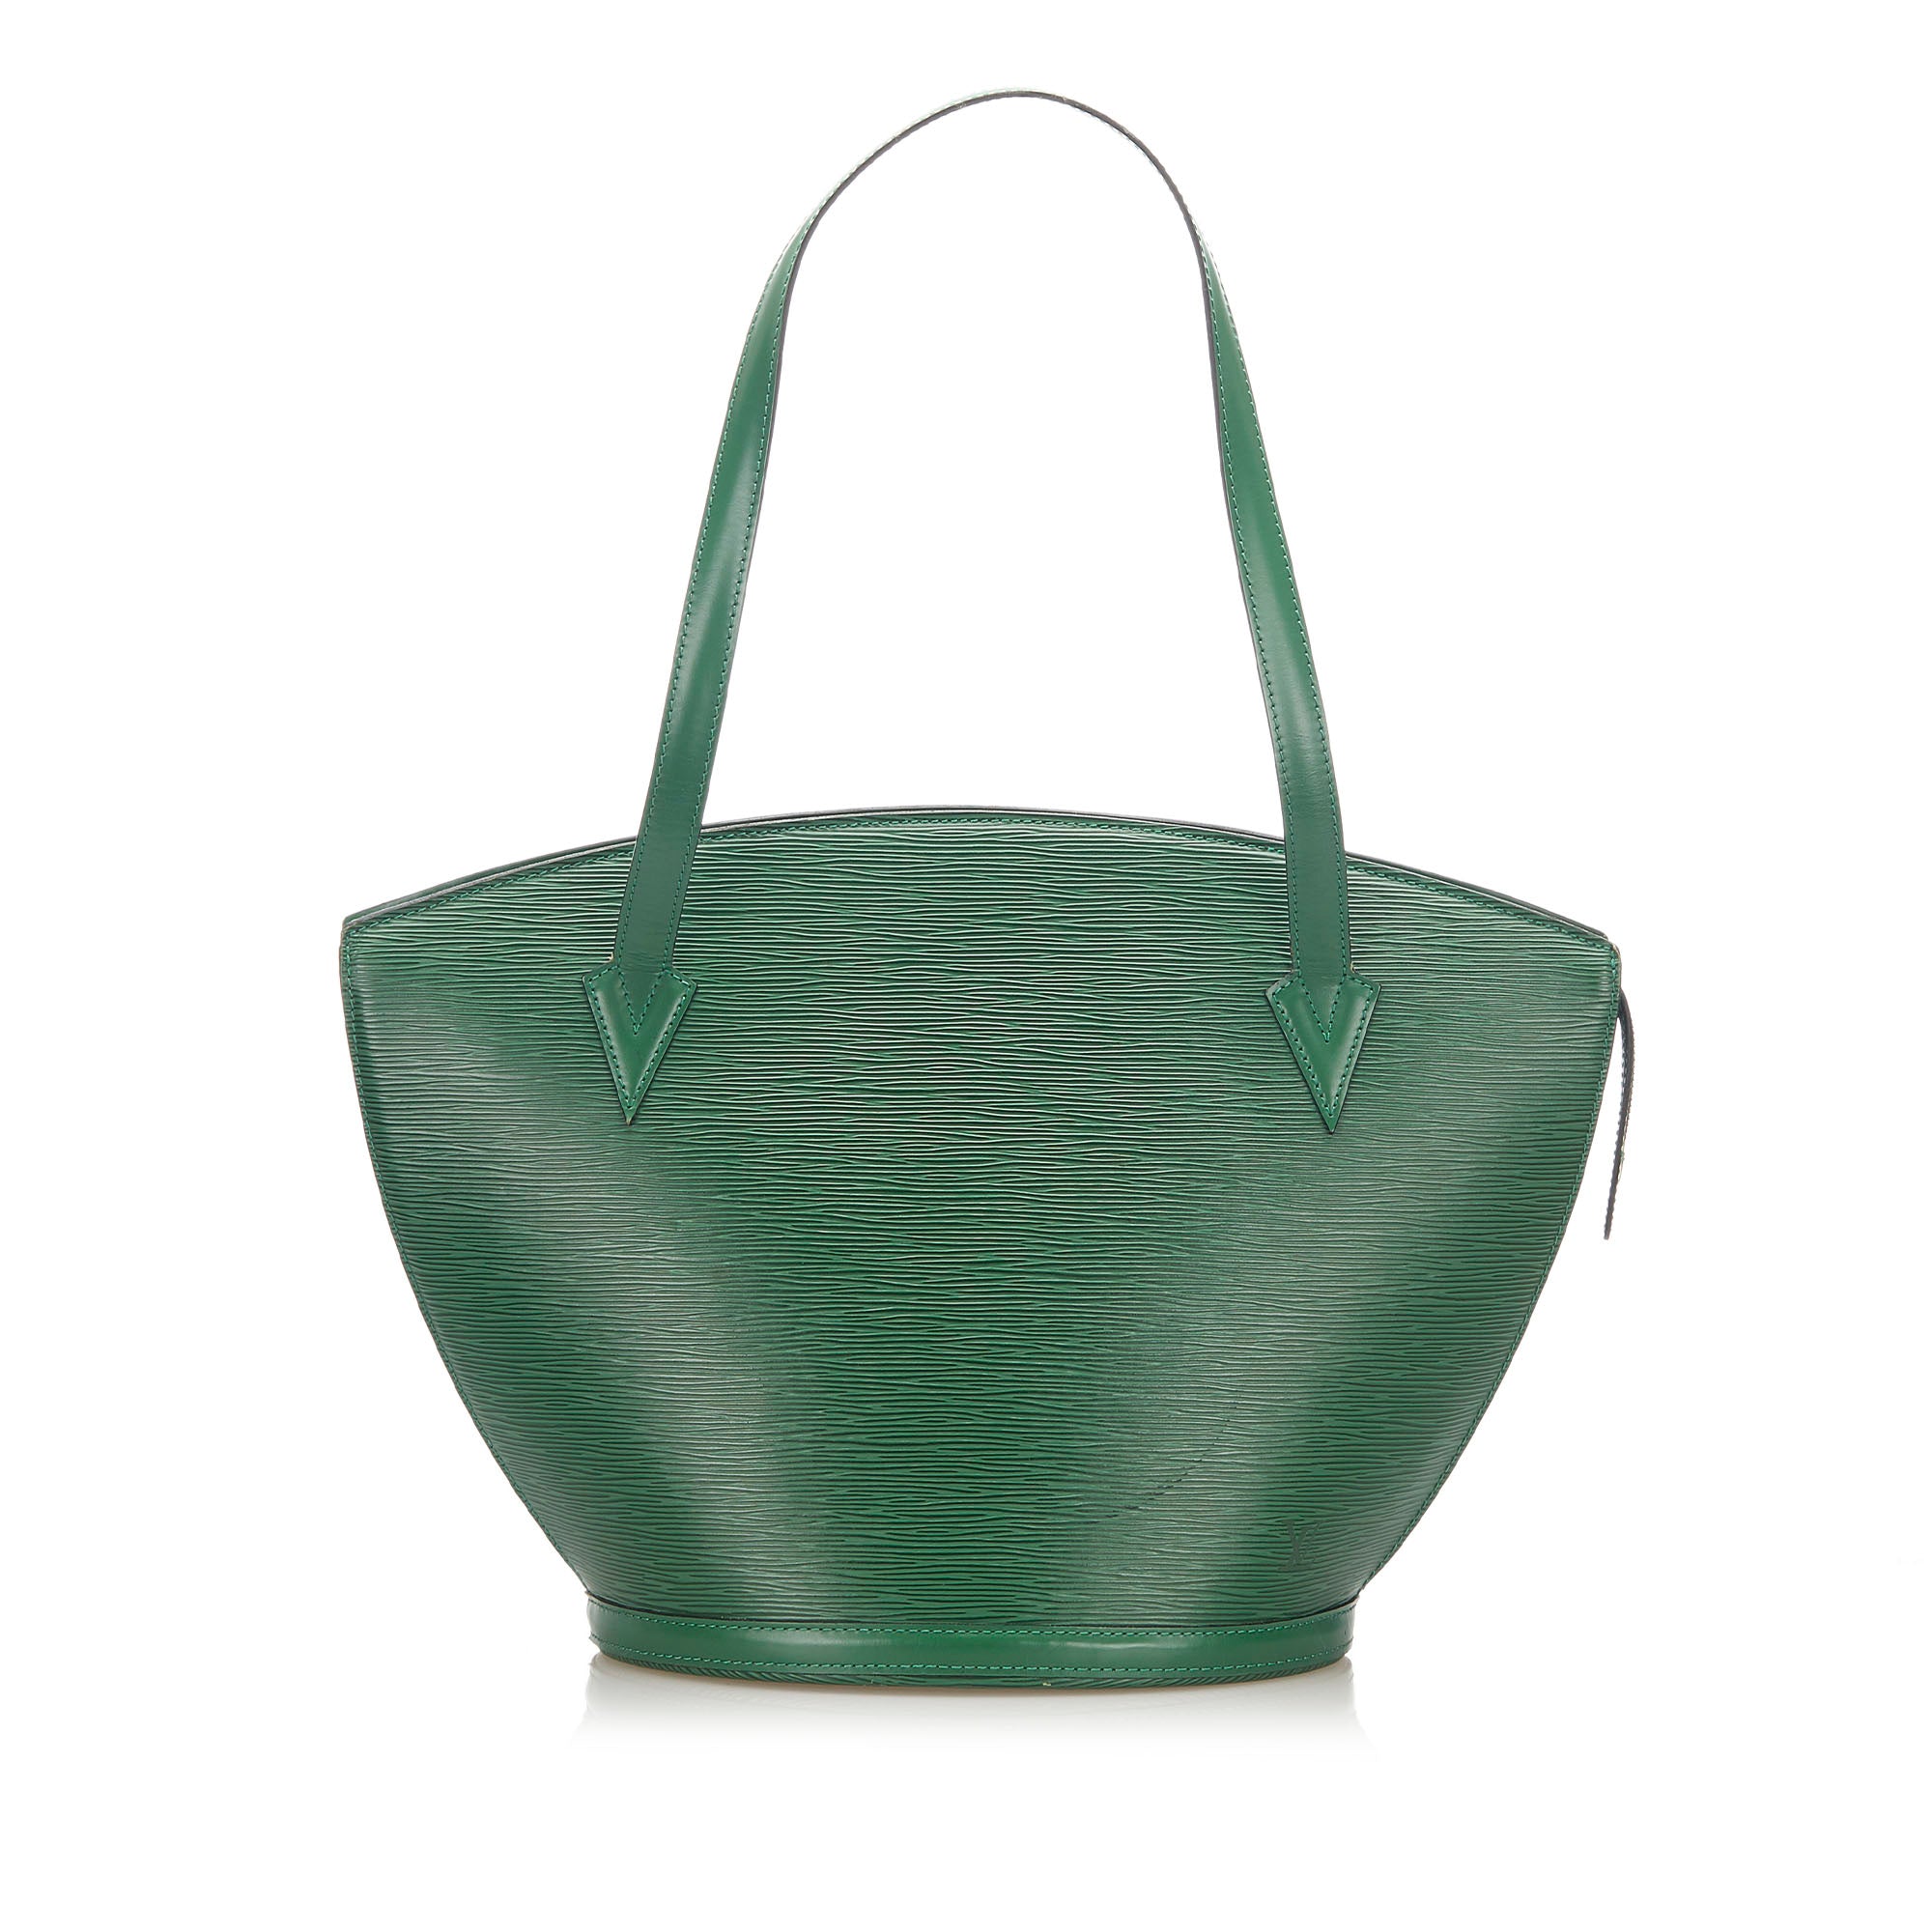 Louis Vuitton Vintage Louis Vuitton Keepall 50 Green Epi Leather